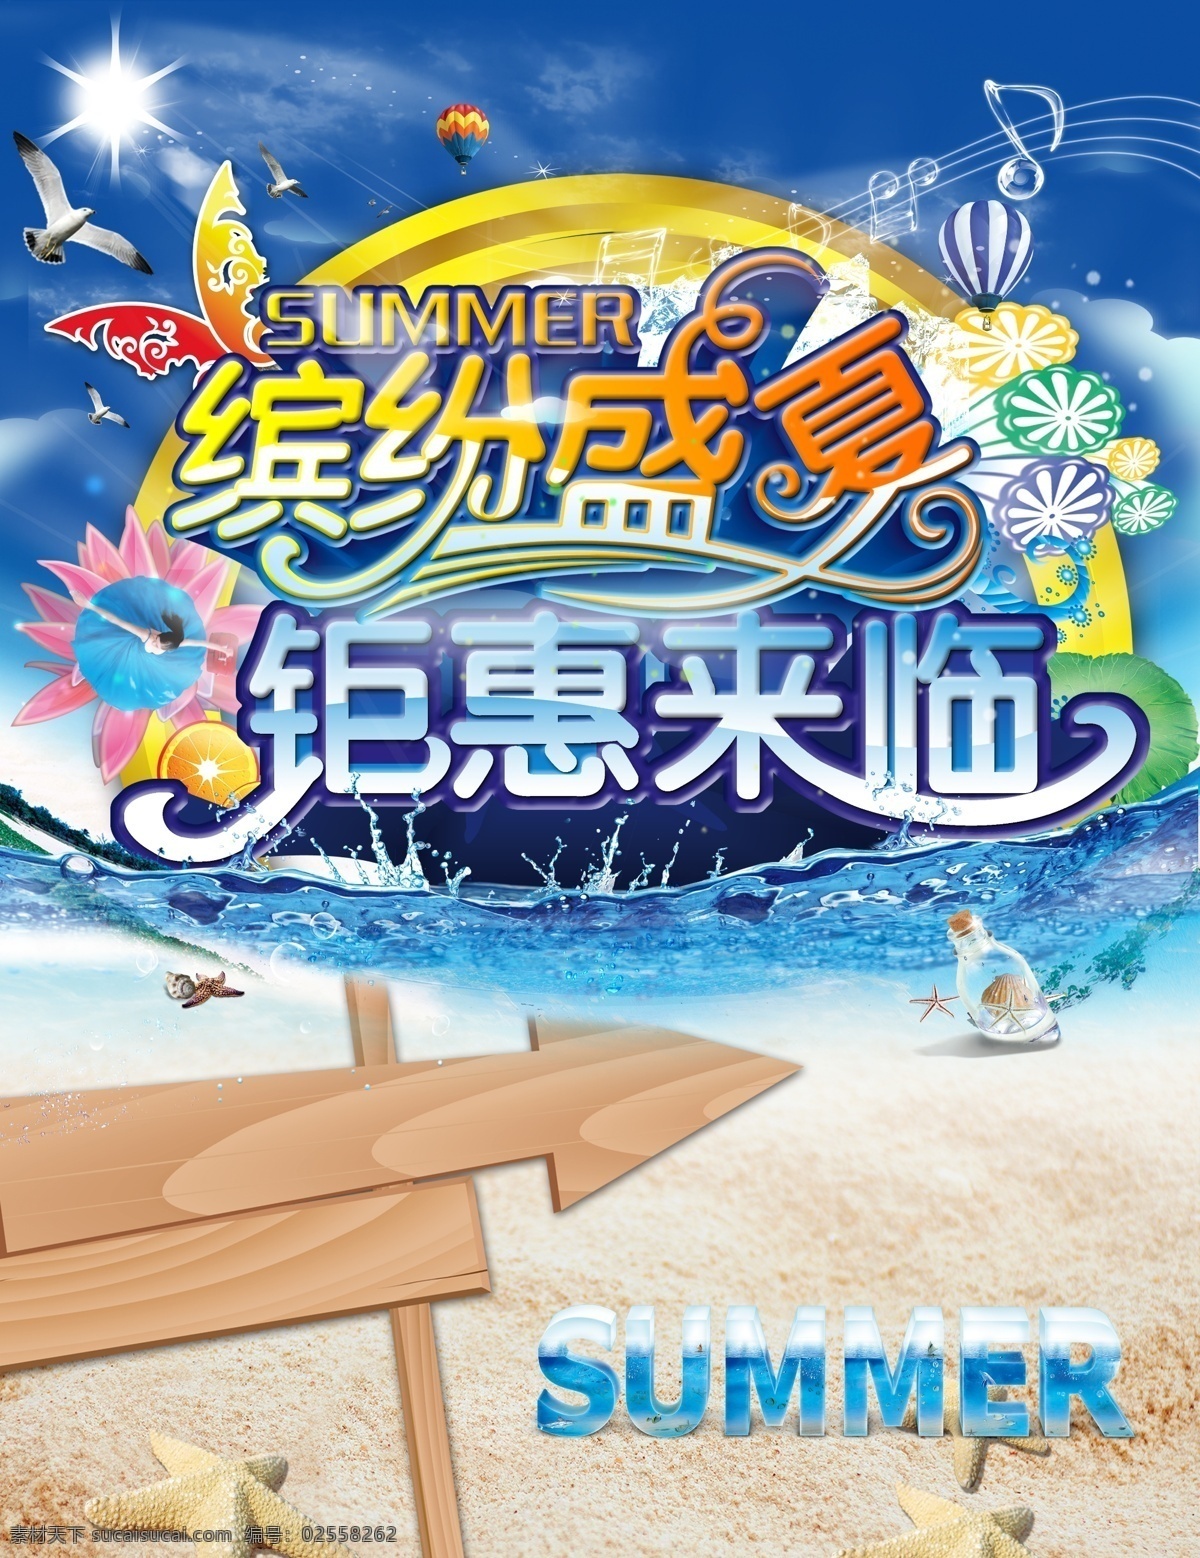 缤纷盛夏 钜惠来临 夏日 海边 冰 水 指示牌 夏天 广告设计模板 源文件